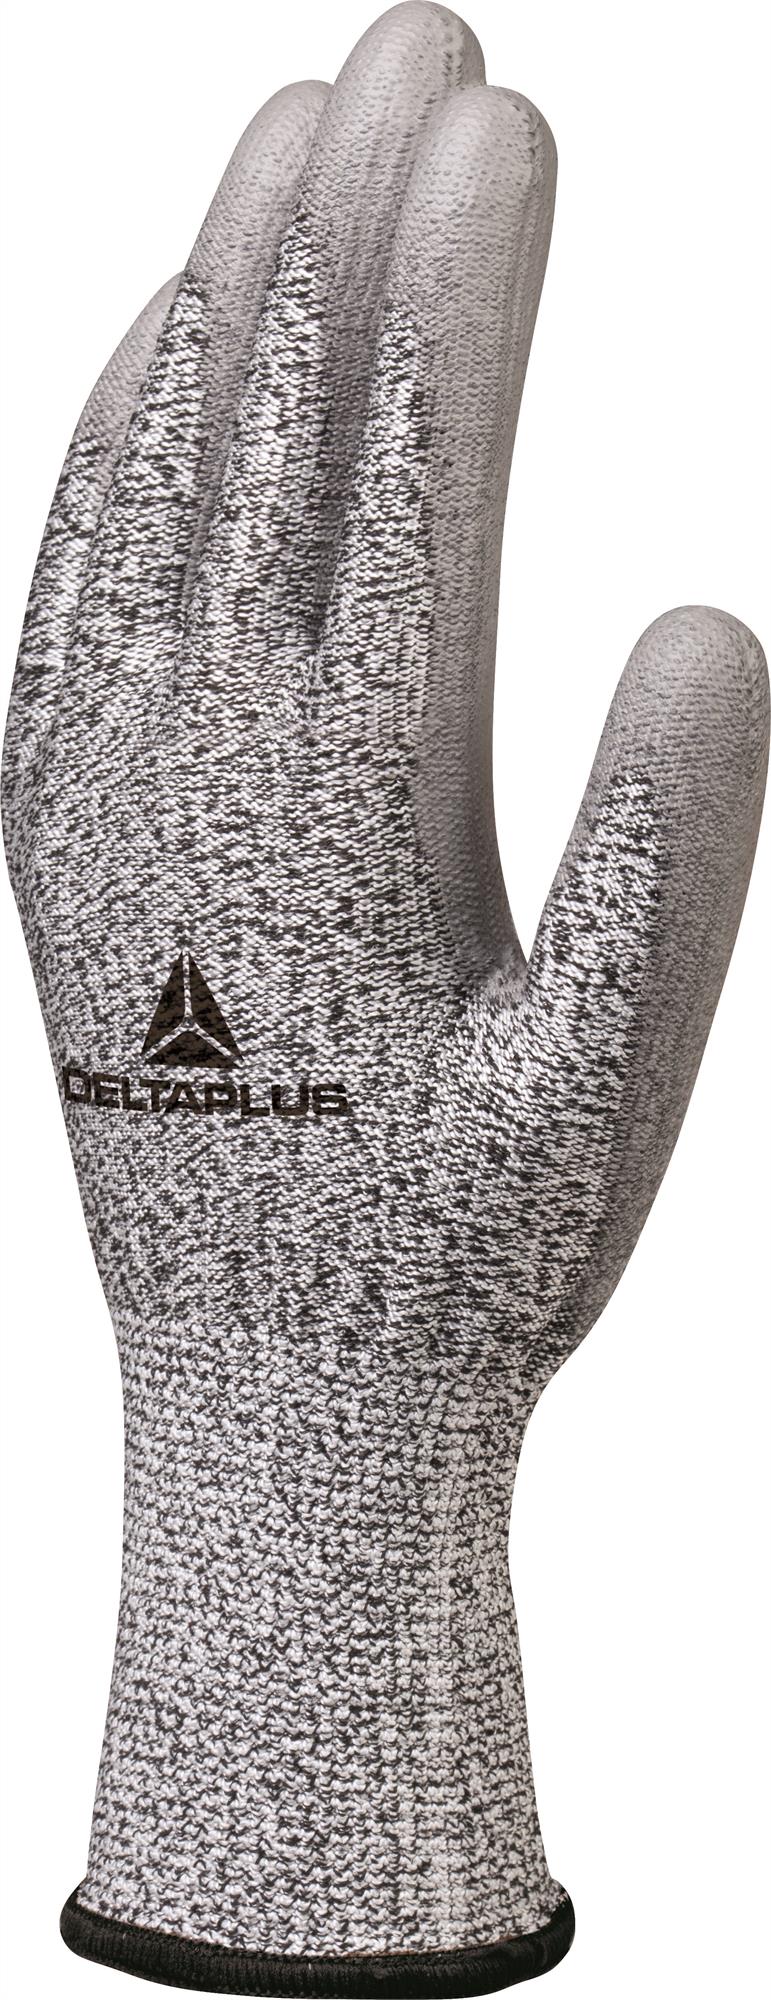 Delta Plus anti-cut level C/4 knitted/PU coated glove (3 pair pack) #VENICUTC04 (updated VENICUT44)